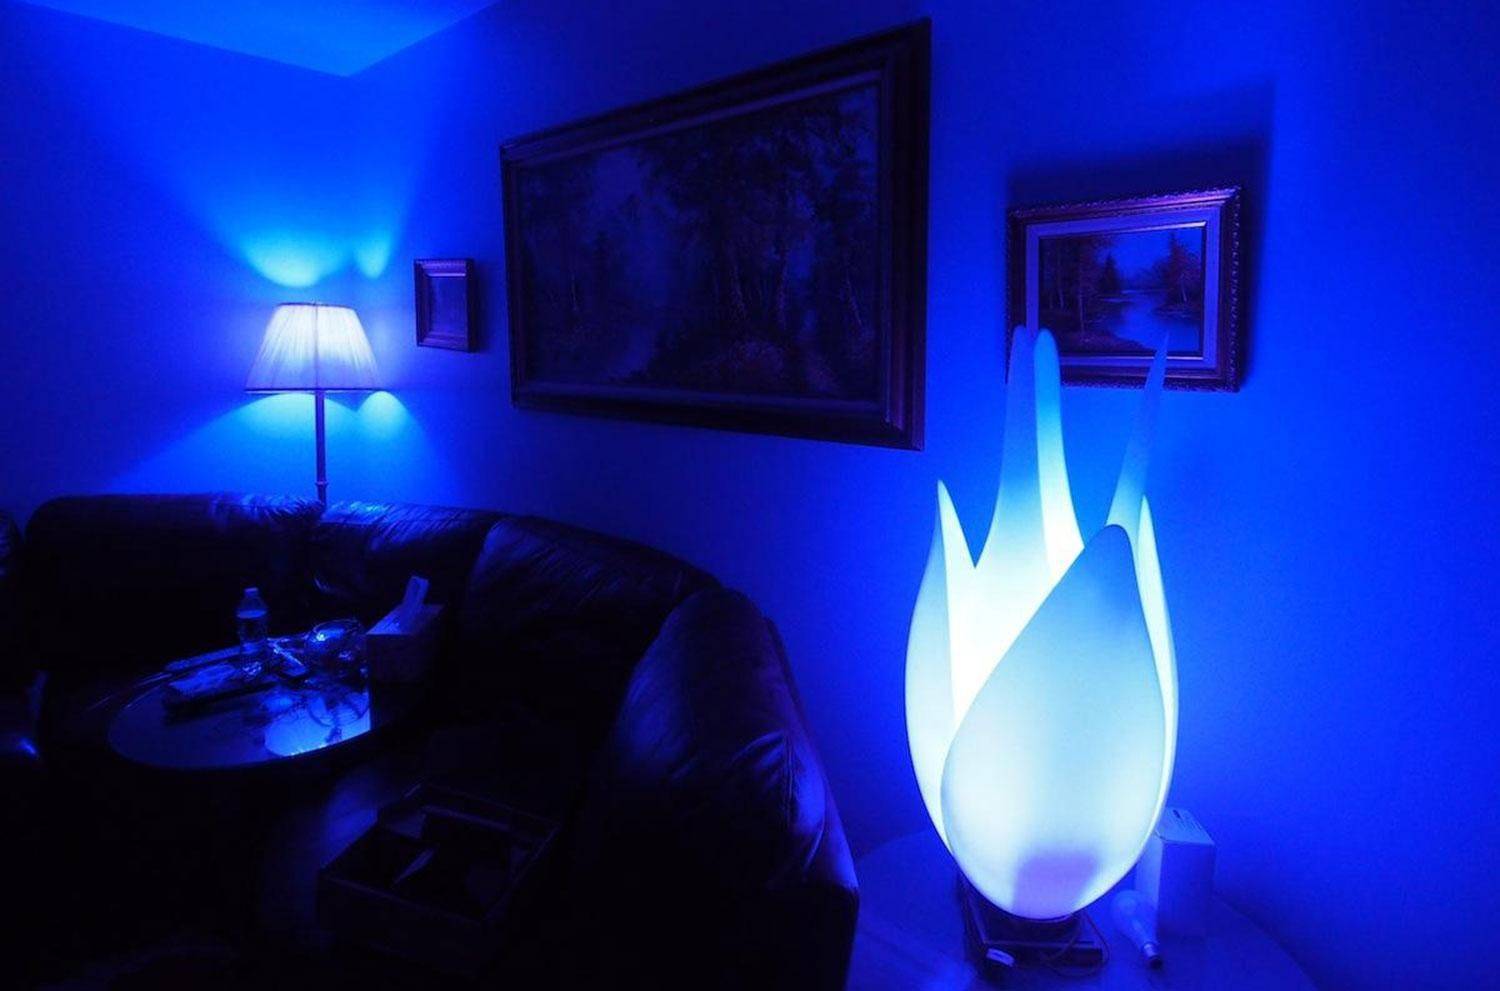 Led — освещение в квартире: виды светильников и расчет освещенности